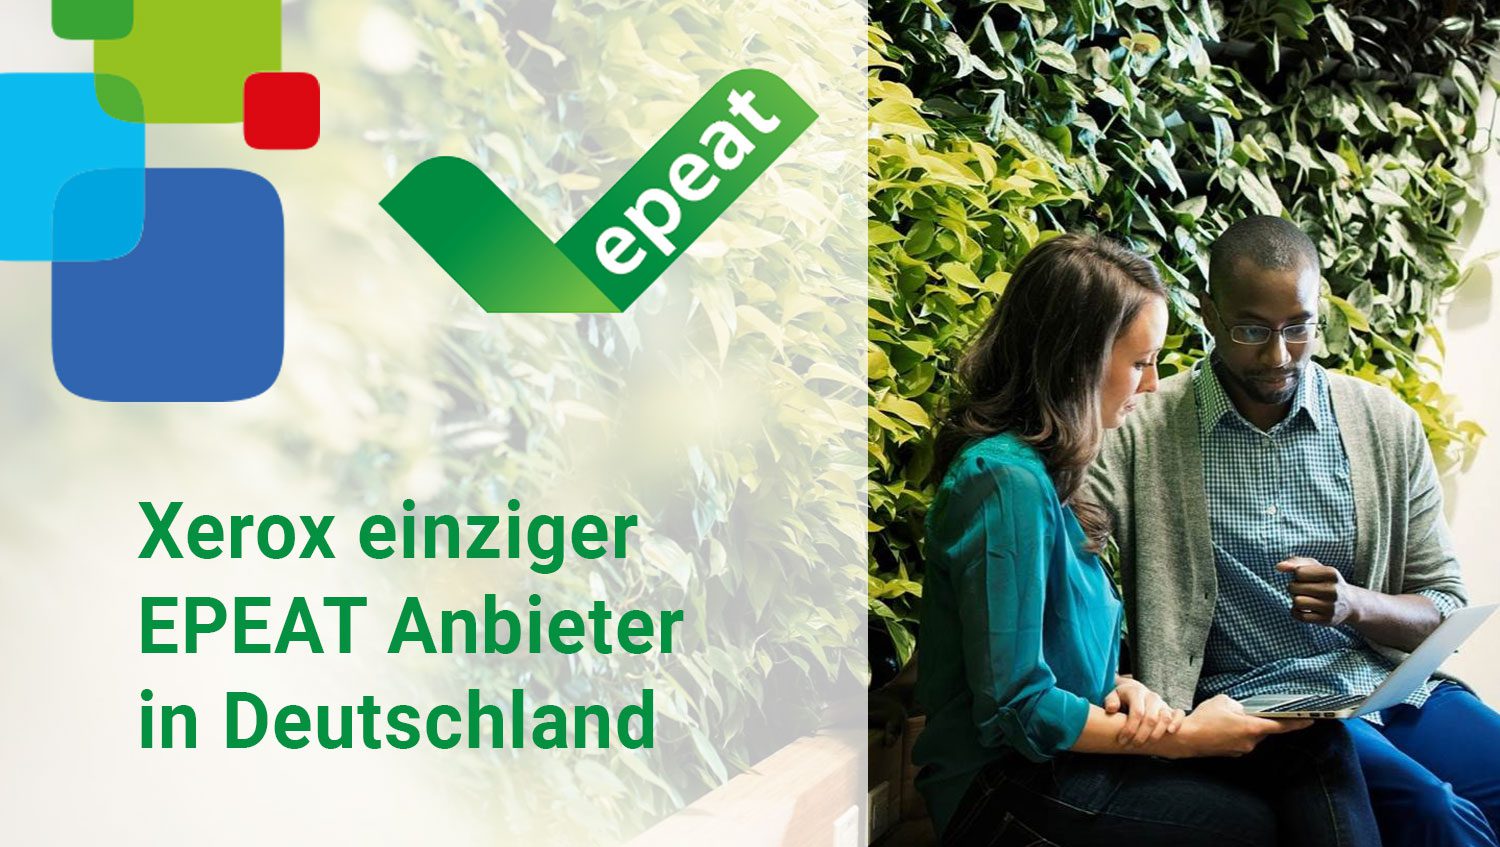 Mit der Entscheidung für EPEAT-zertifizierte Gerät können Unternehmen einen klaren und nachweisbaren Beitrag zum Umweltschutz leisten. Xerox ist der einzige Druckerhersteller, dessen Systeme in Deutschland nach dem Umweltlabel EPEAT zertifiziert sind.